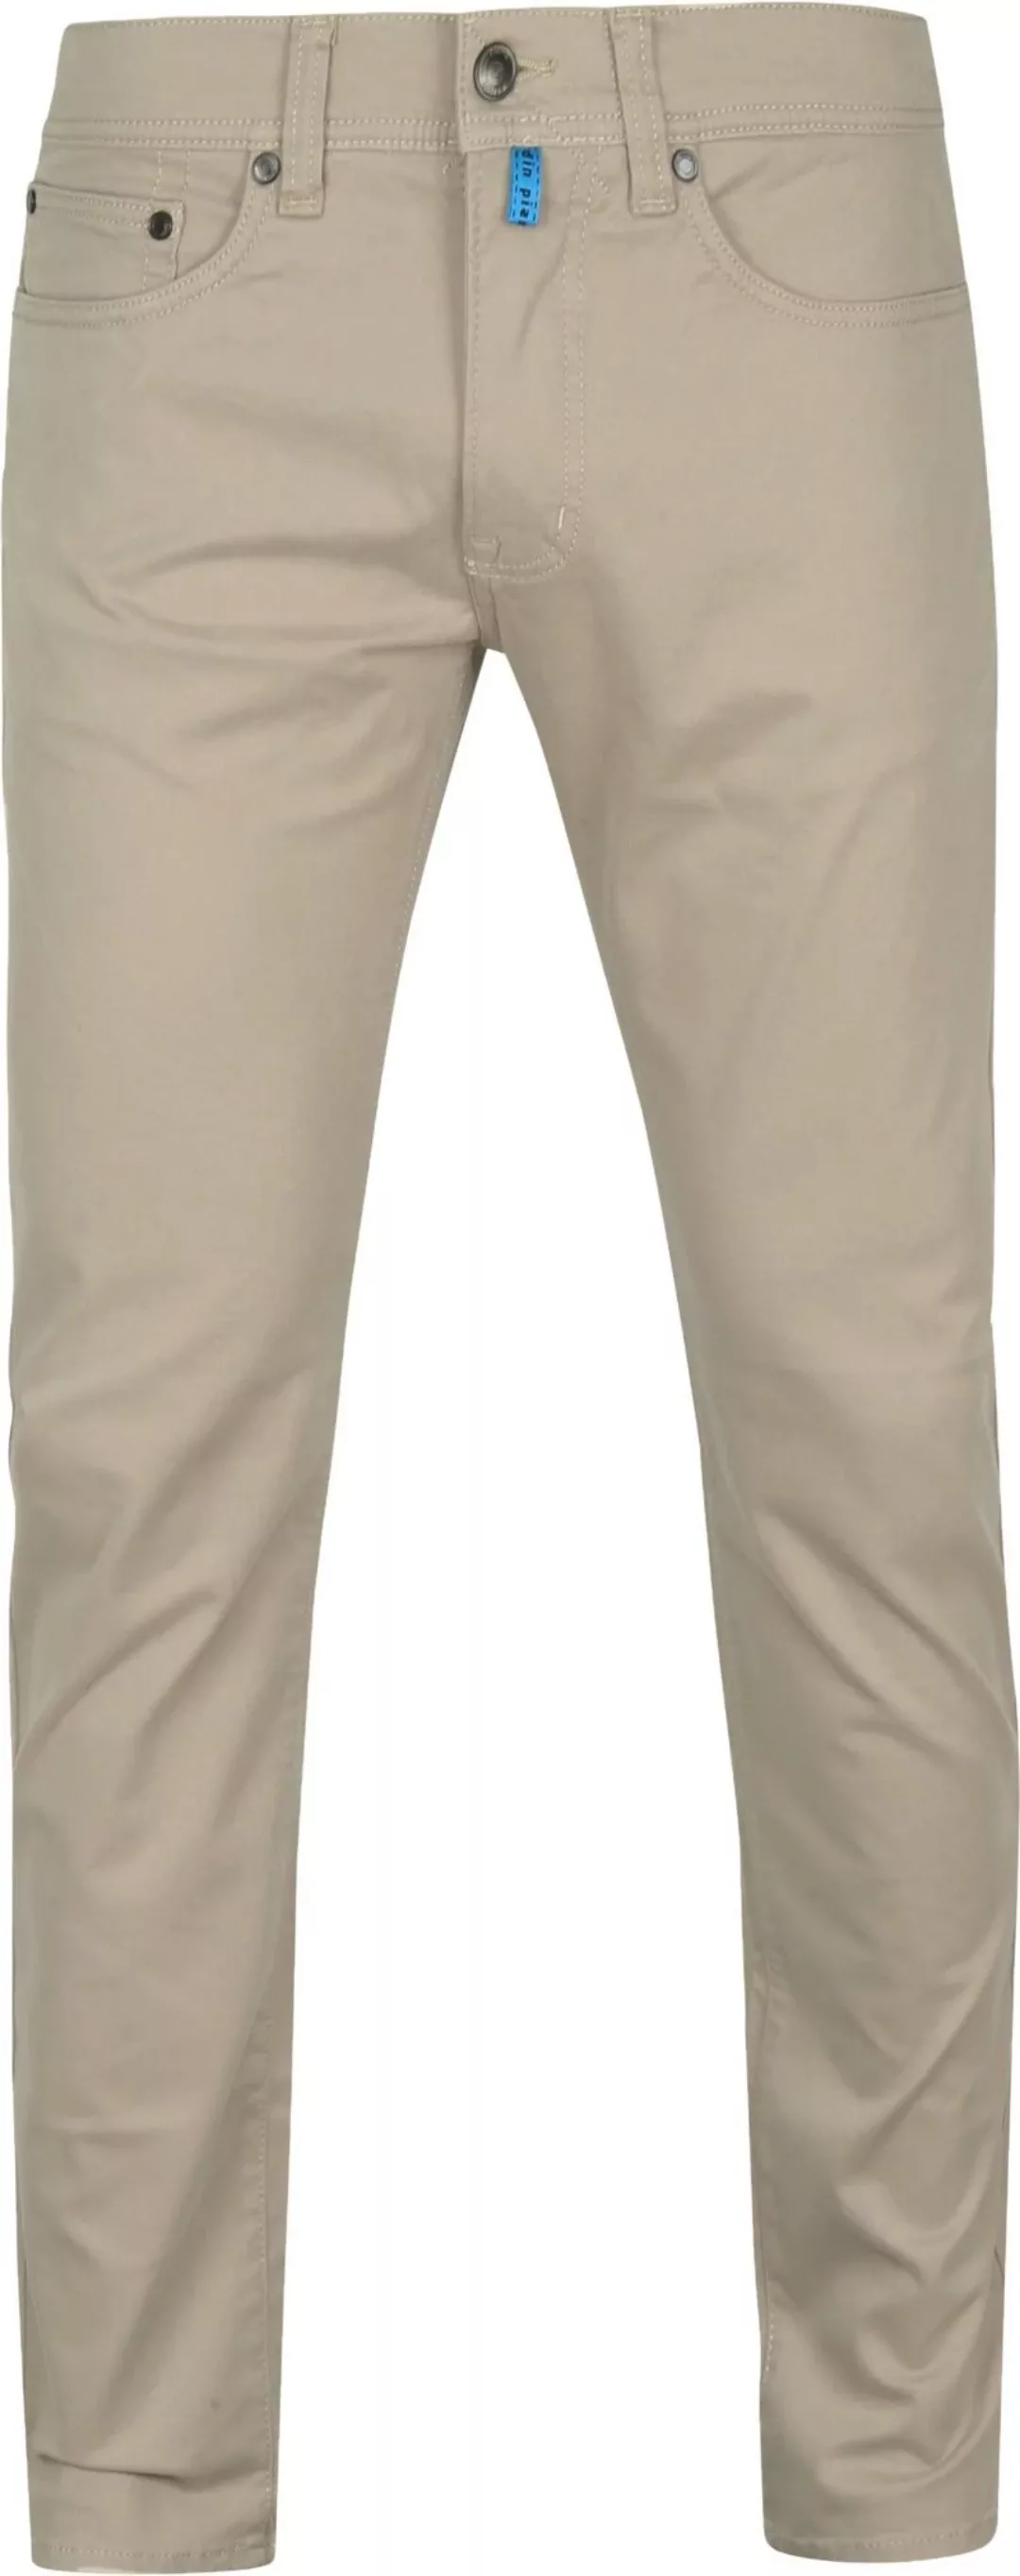 Pierre Cardin Antibes 5 Pocket Hose Khaki - Größe W 32 - L 32 günstig online kaufen